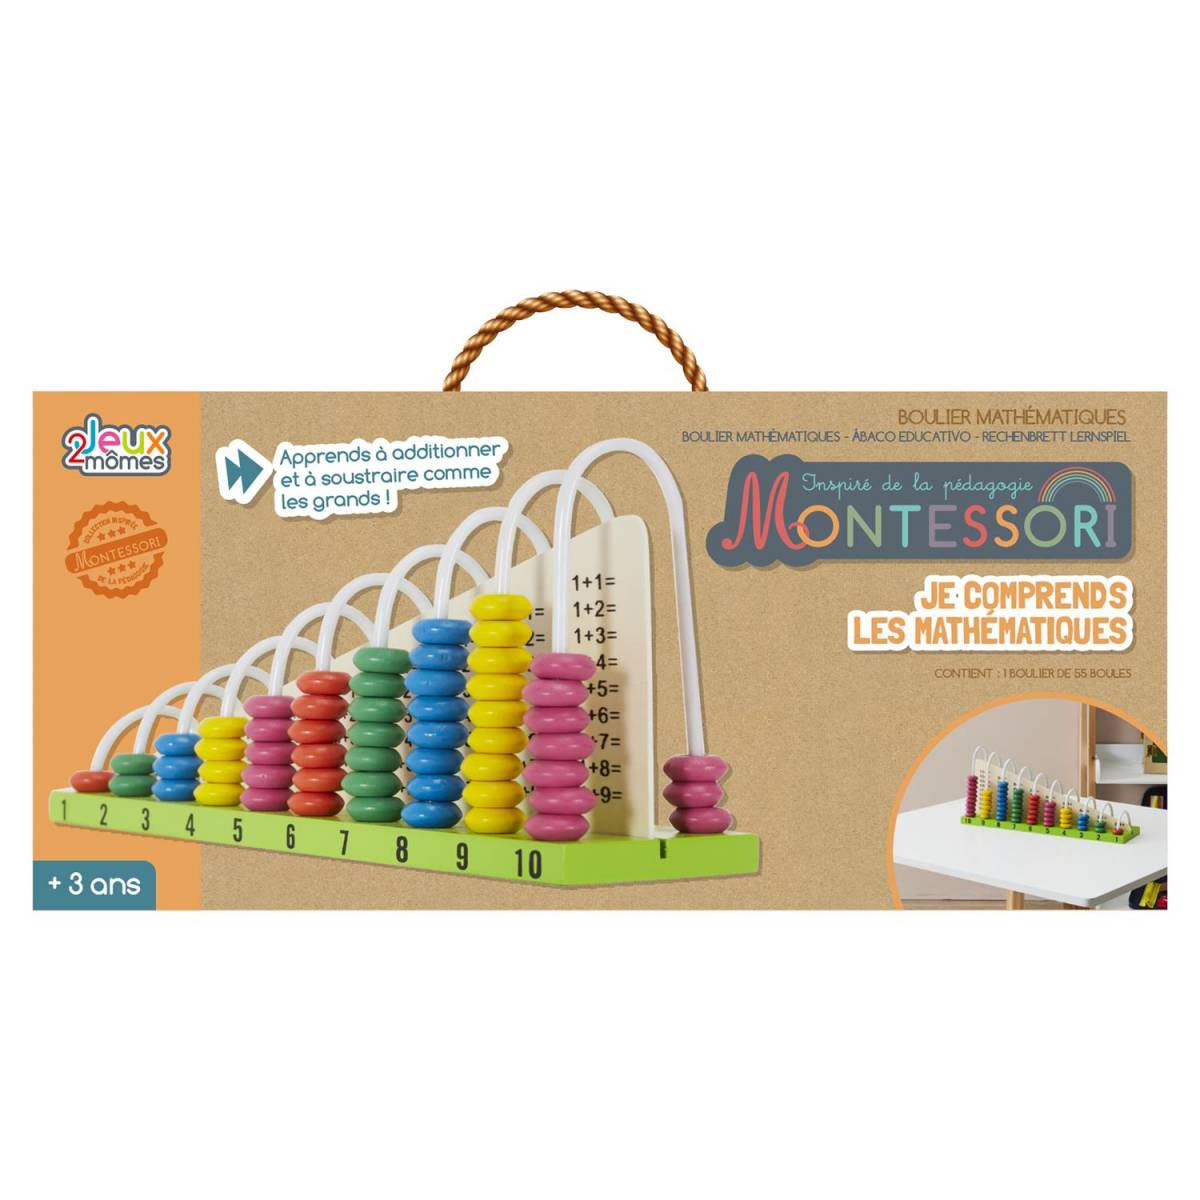 Boulier Je comprends les mathematiques Jeux 2 momes Montessori